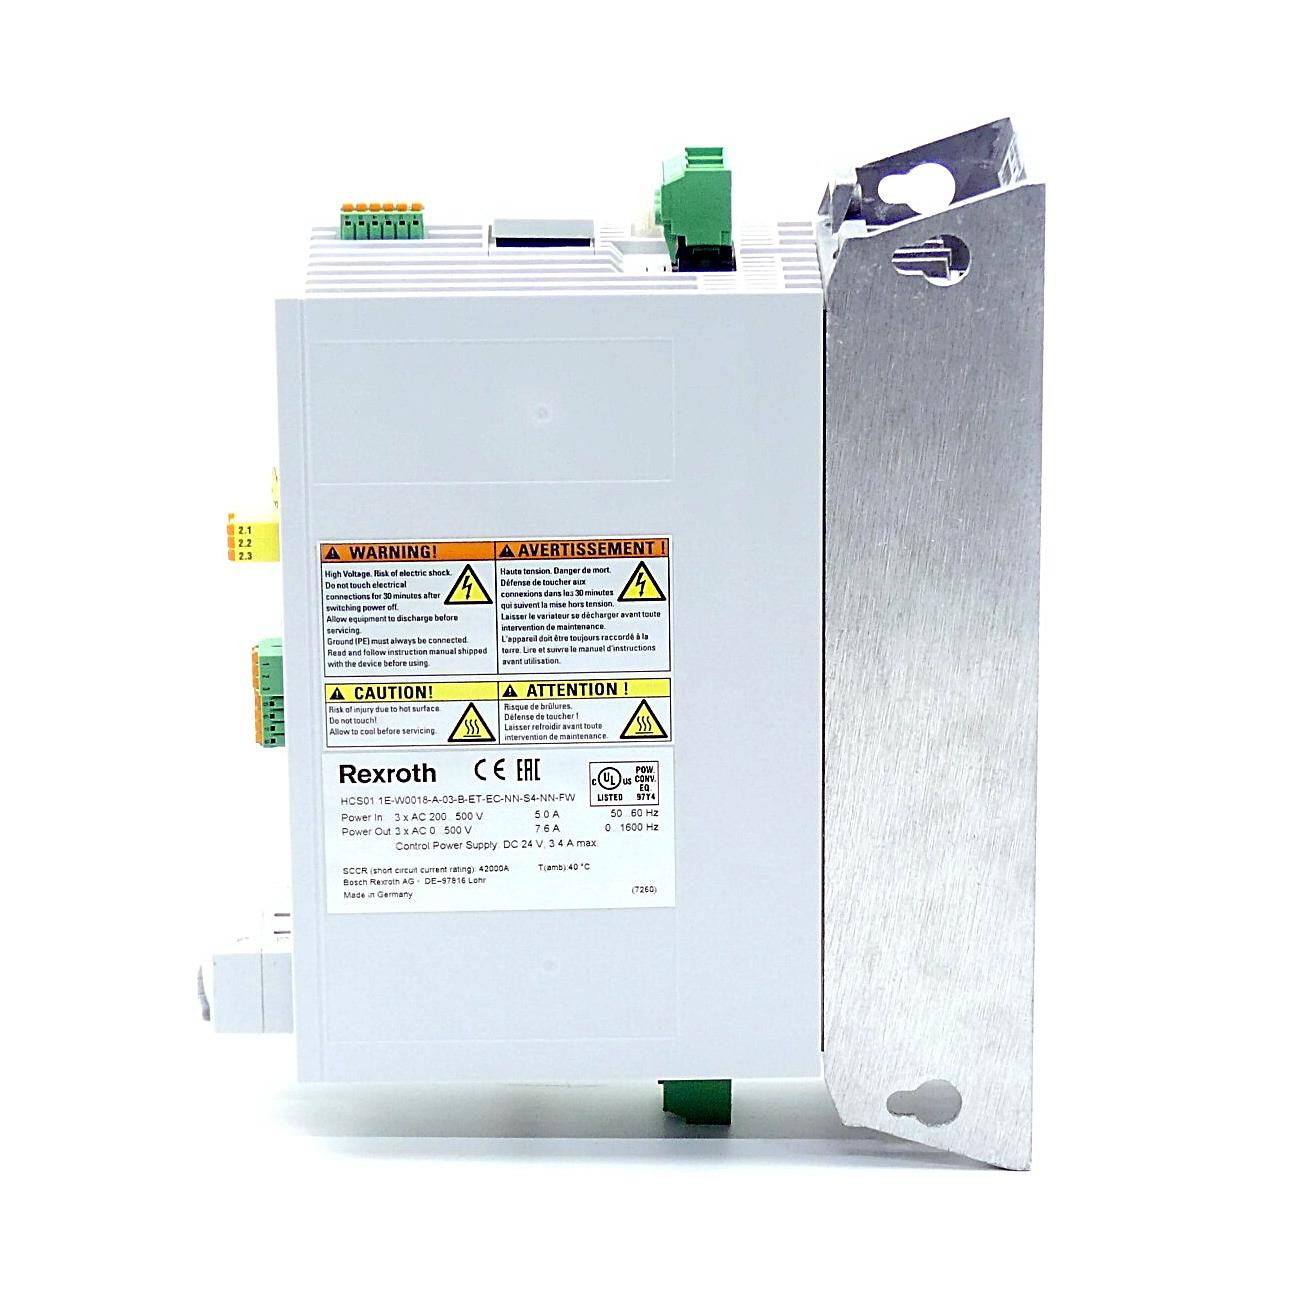 Produktfoto 5 von REXROTH IndraDrive Kompaktumrichter HCS01.1E-W0018-A-03-B-ET-EC-NN-S4-NN-FW